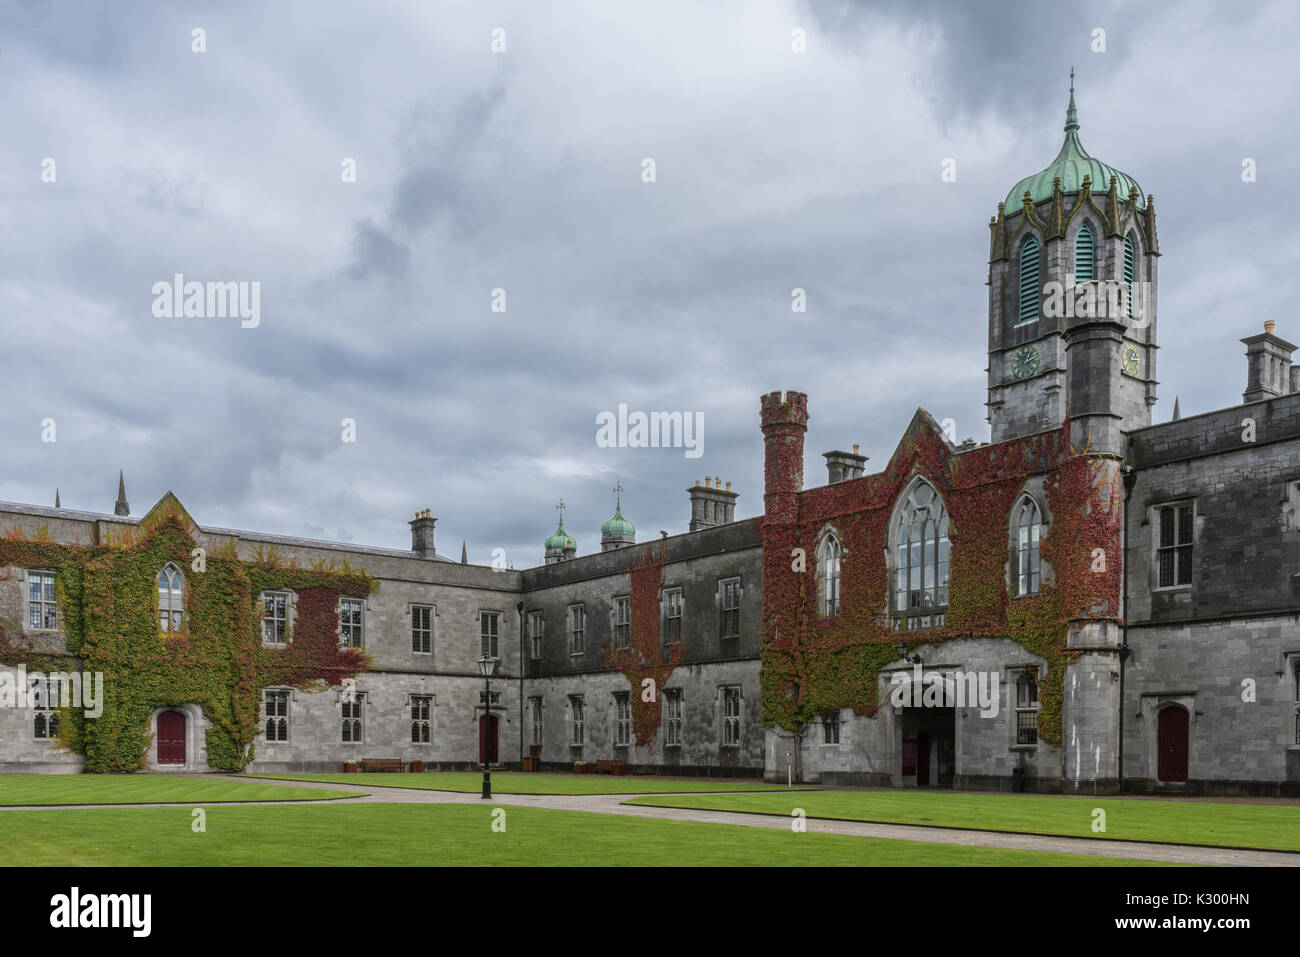 Galway, Irlande - Août 5, 2017 : partie de quadrilatère historique sur le campus de l'Université nationale d'Irlande. Bloc d'entrée couverte de lierre avec tour de l'horloge Banque D'Images